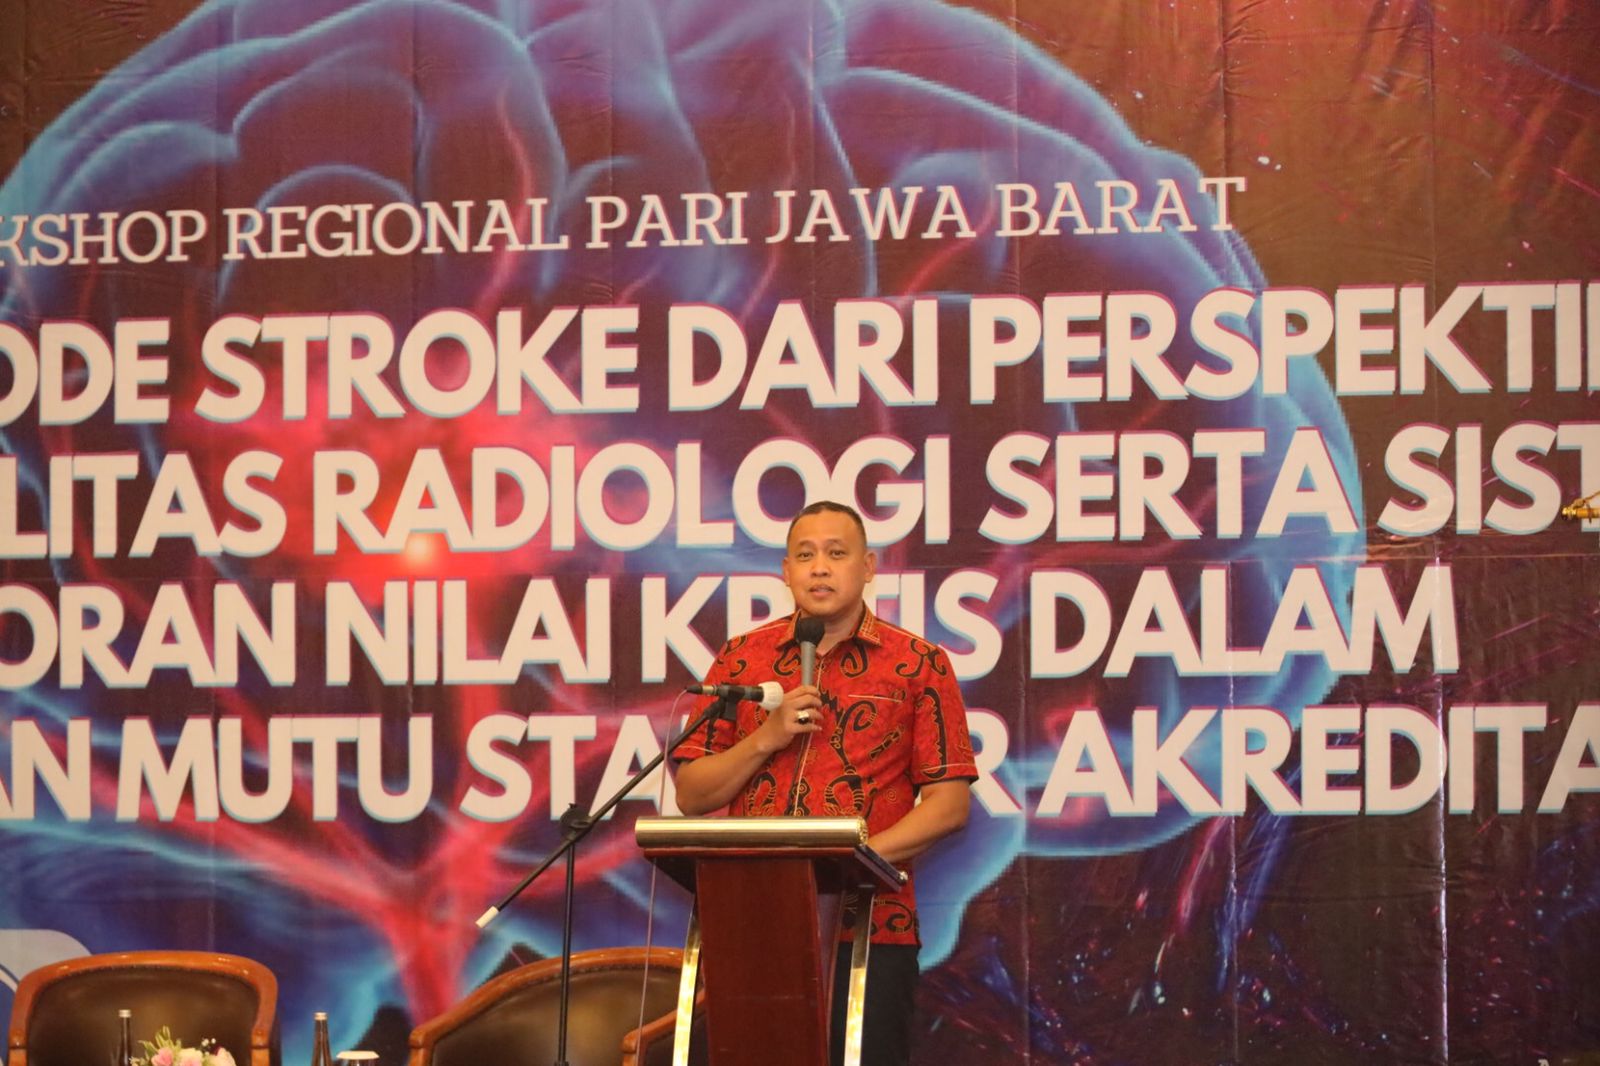 PLT Walikota Bekas Buka Workshop Pari Regional Jawa Barat 